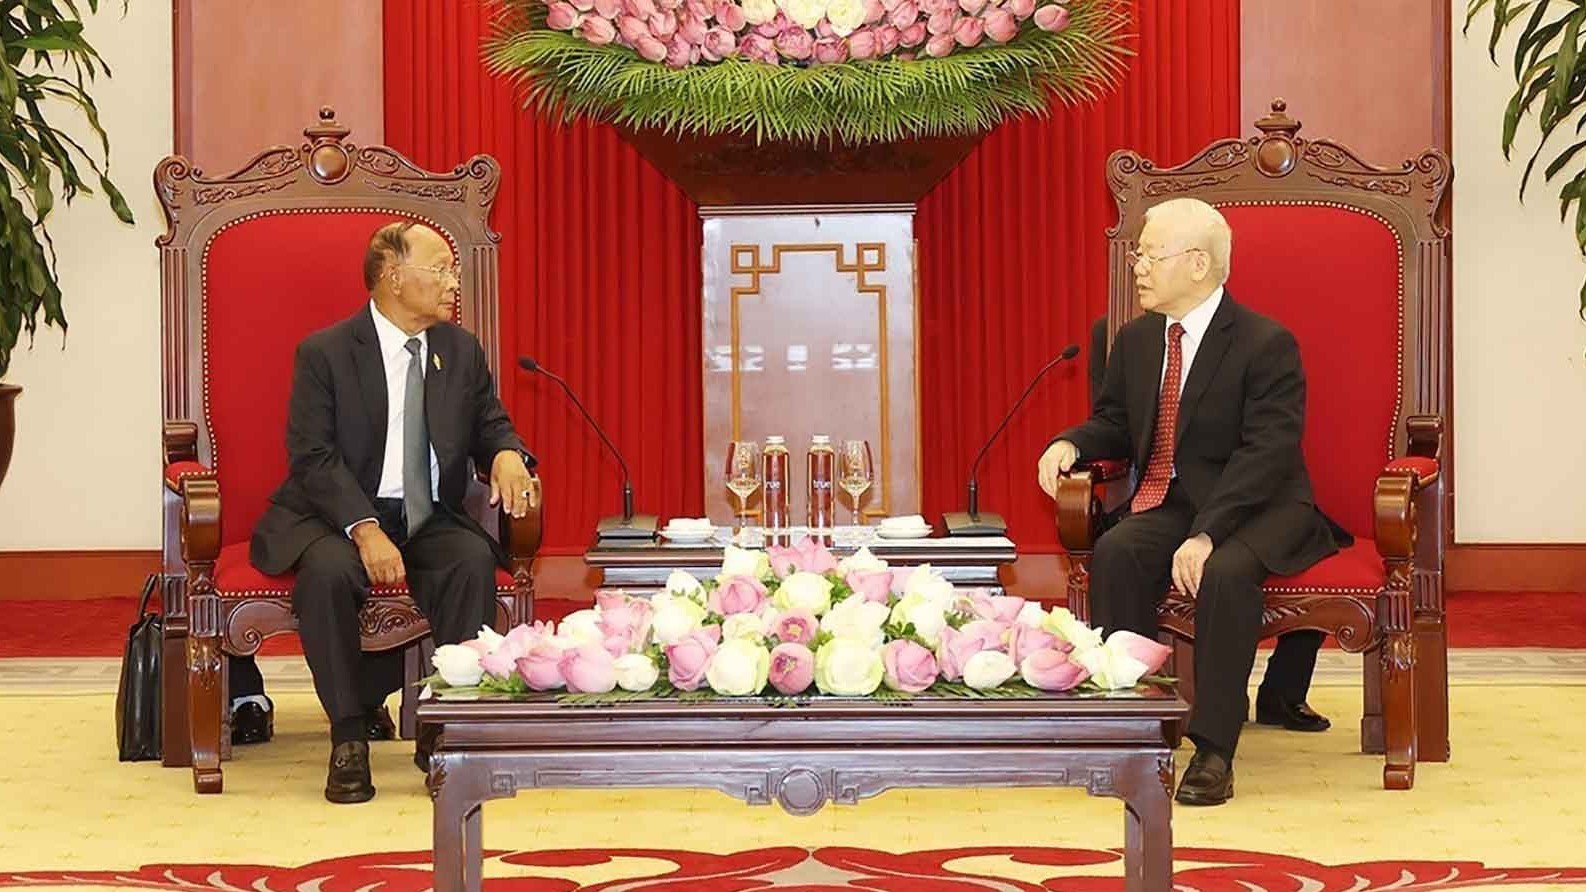 Tổng Bí thư Nguyễn Phú Trọng tiếp Chủ tịch Quốc hội Vương quốc Campuchia